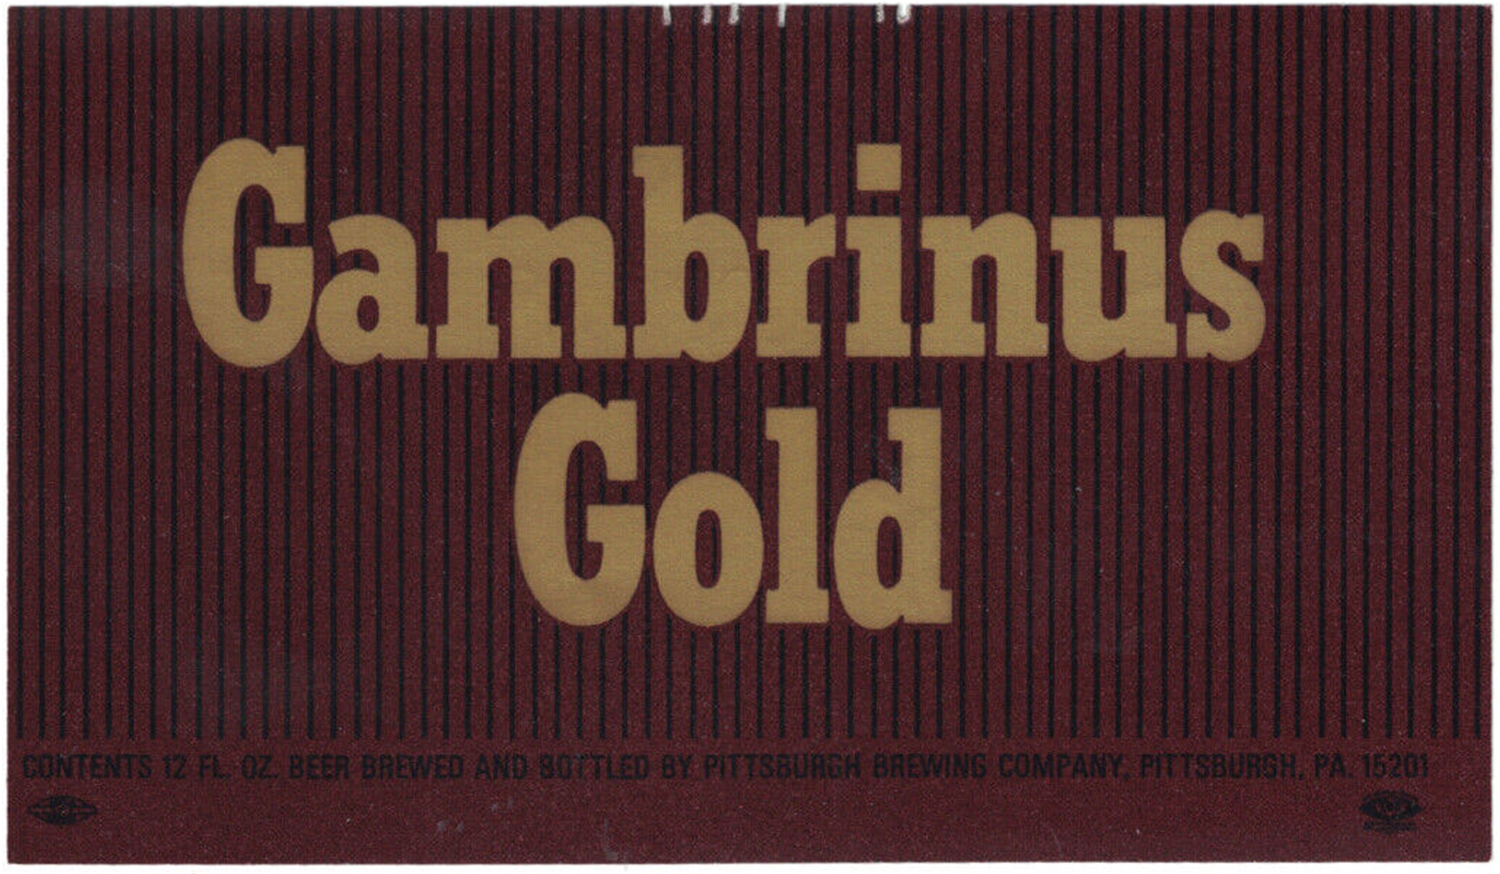 Gambrinus Gold Beer Label